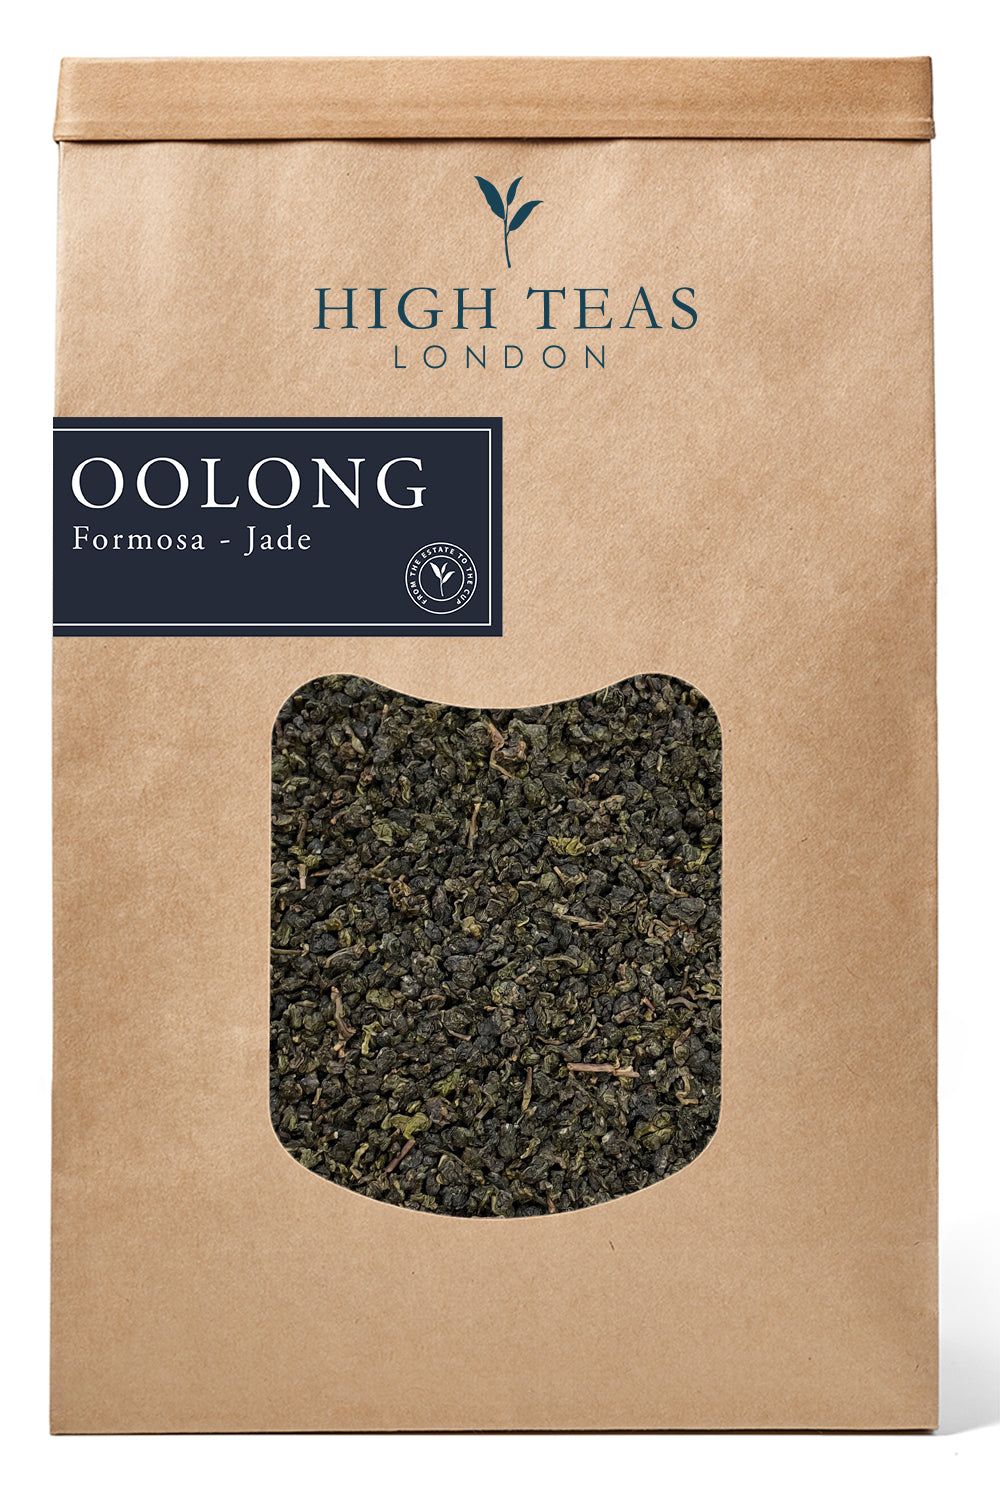 Formosa - Jade Oolong-500g-Loose Leaf Tea-High Teas